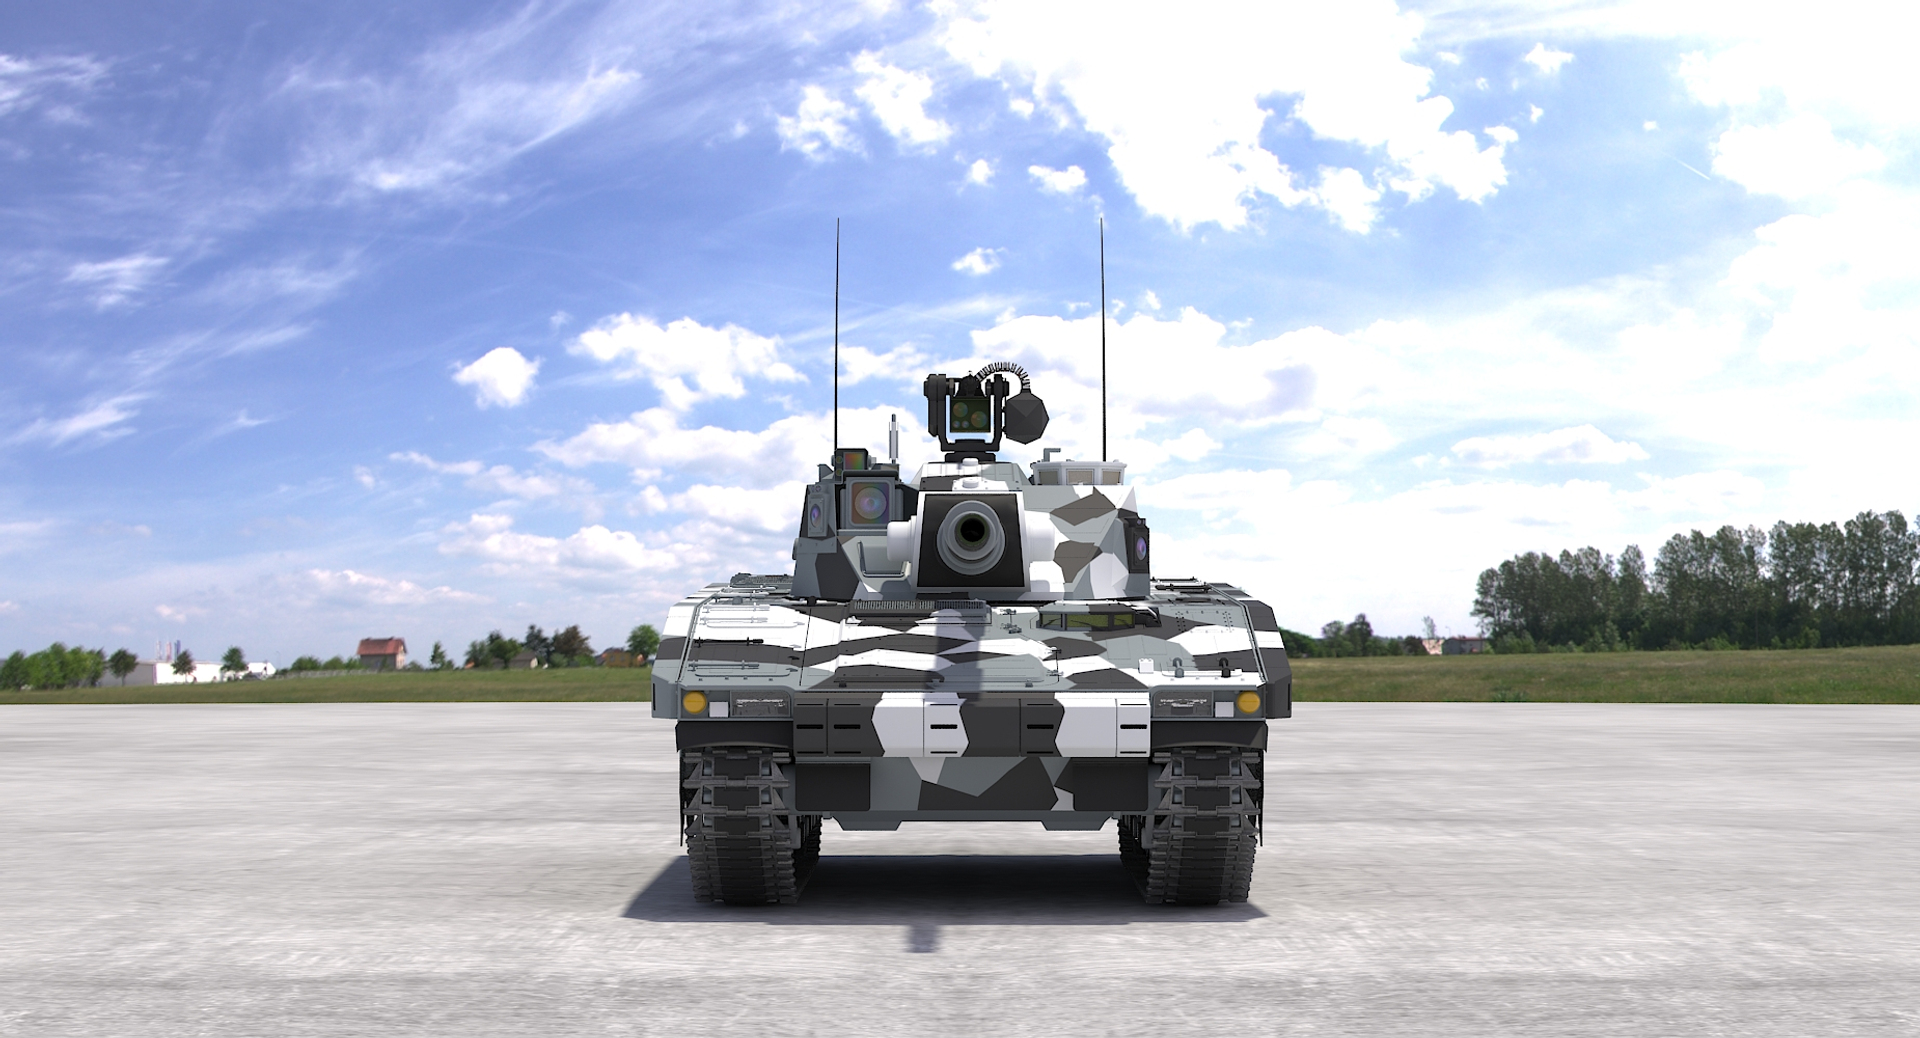 CV90 120-T Light Tank (White Camo) 3D Model $199 - .max .fbx .obj - Free3D